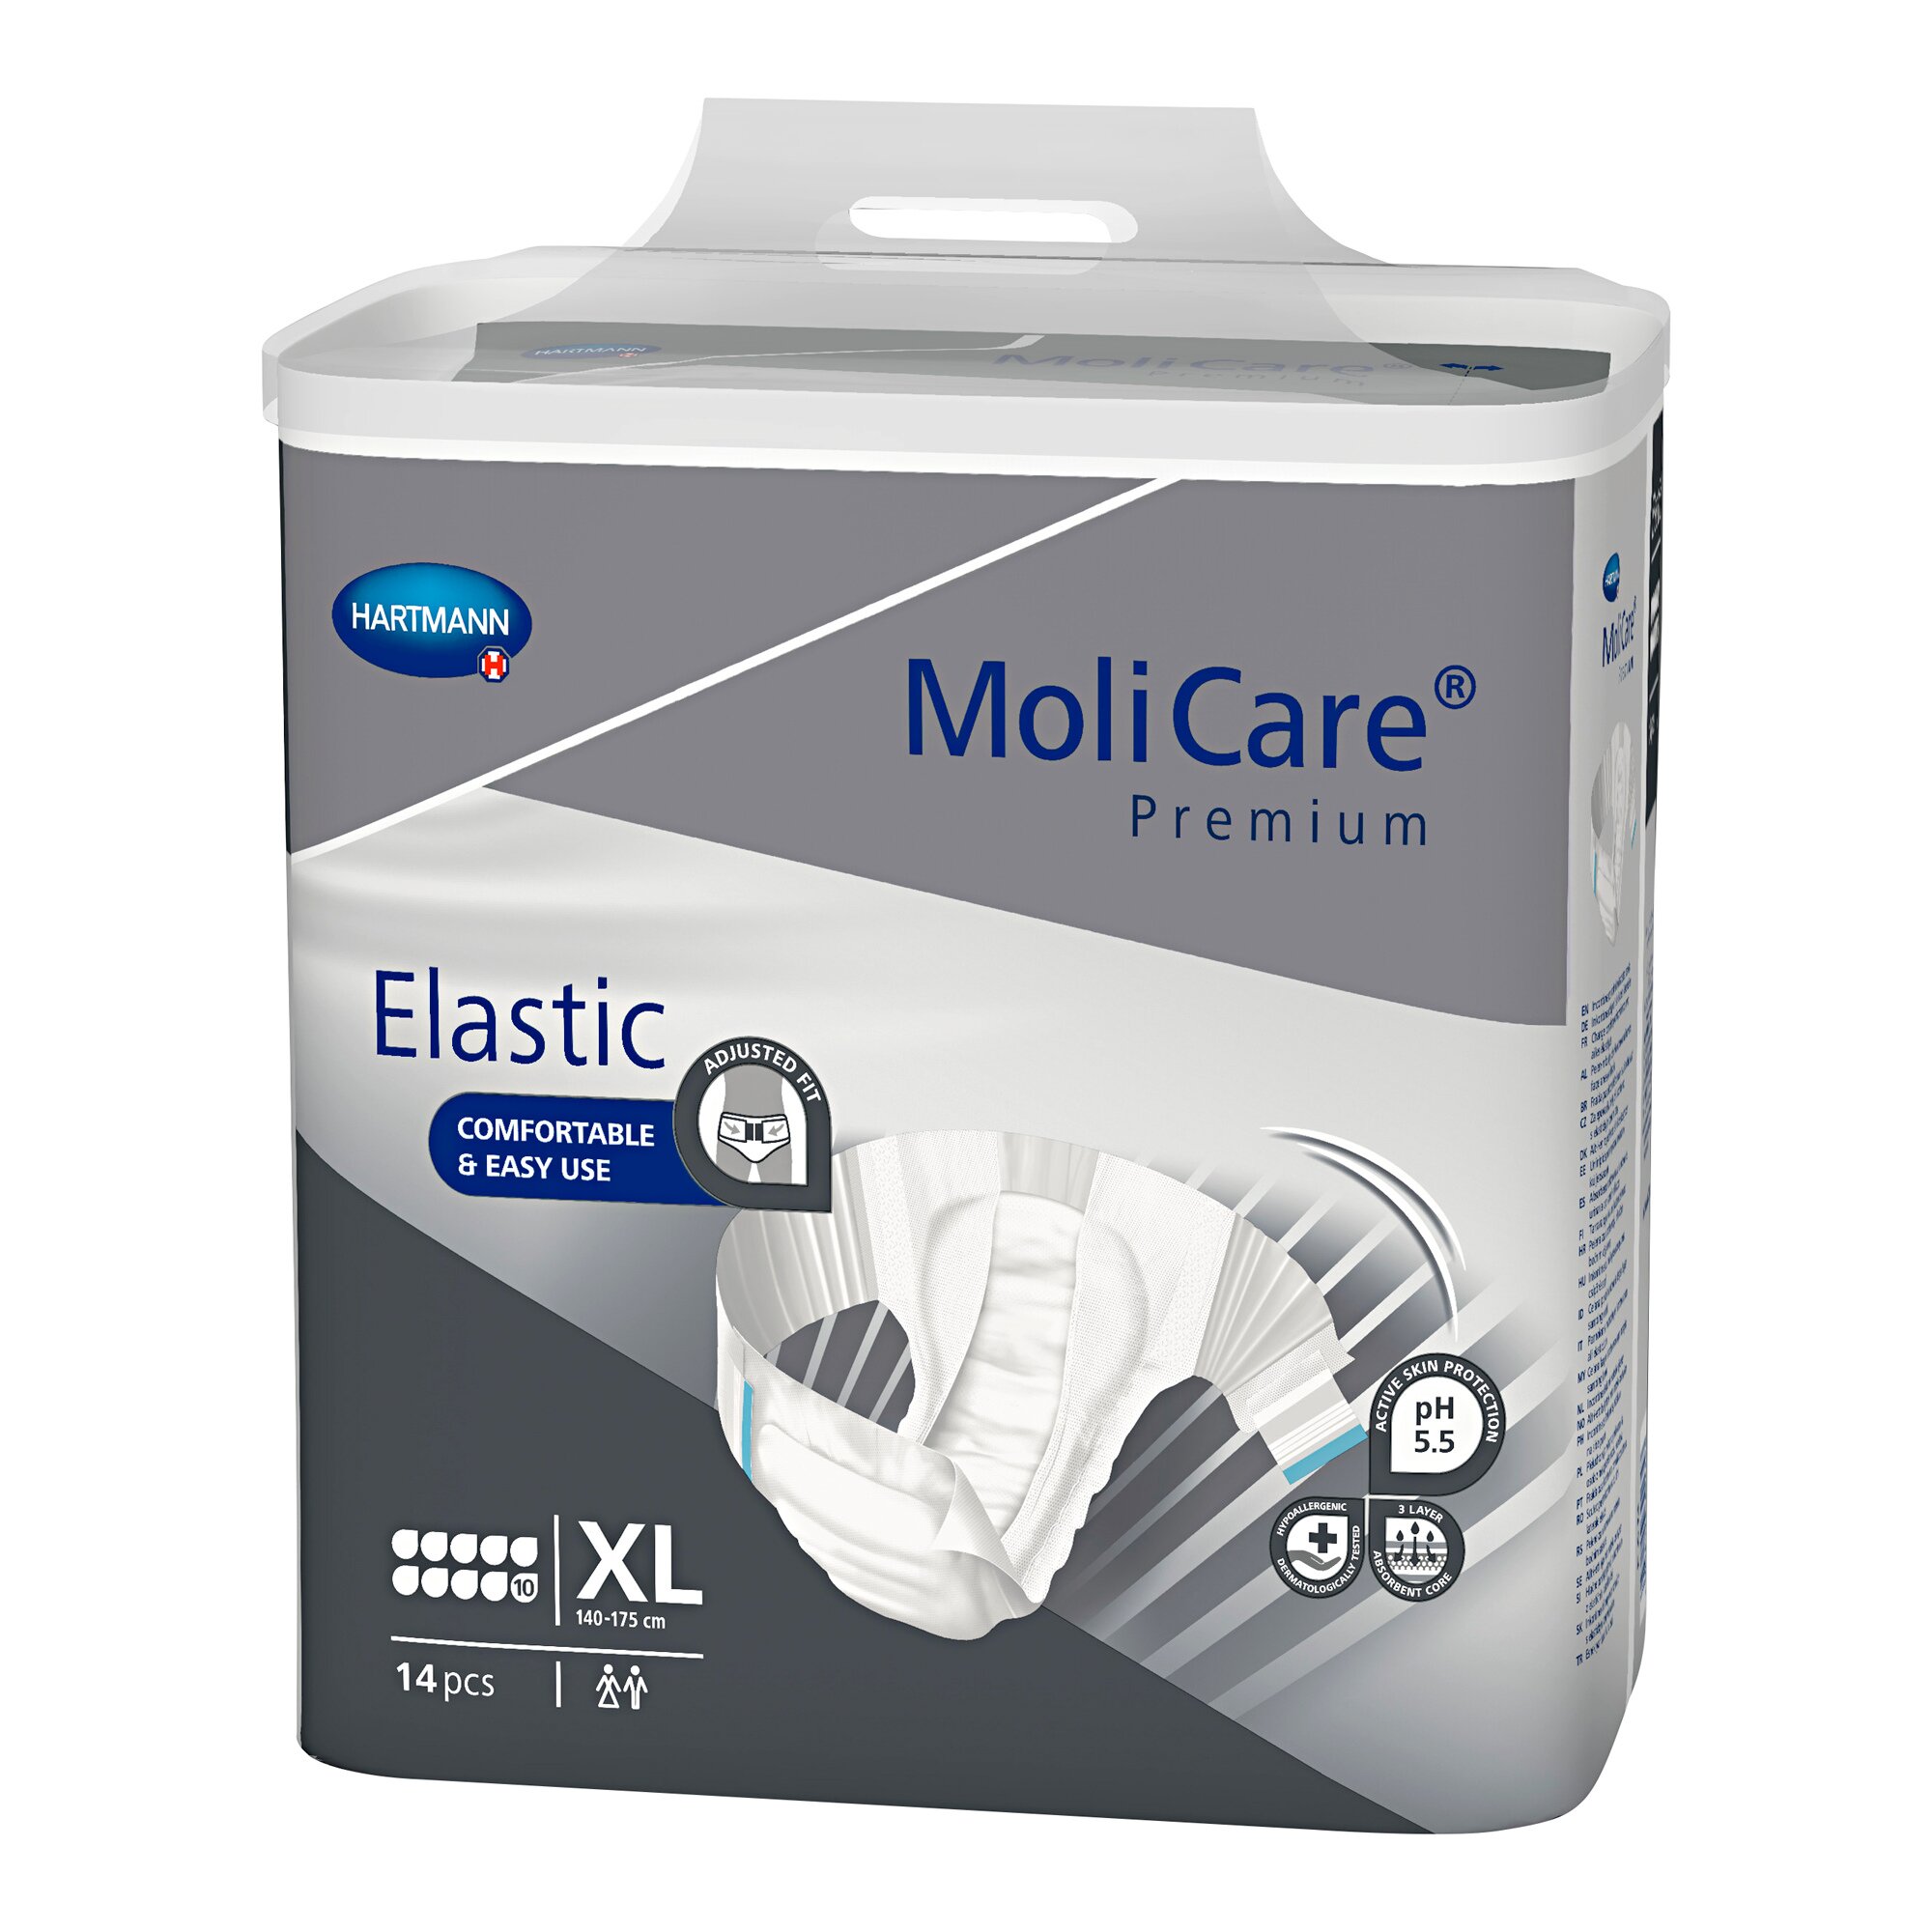 MoliCare Premium Elastic, Saugleistung 3.000 ml, Größe: XL